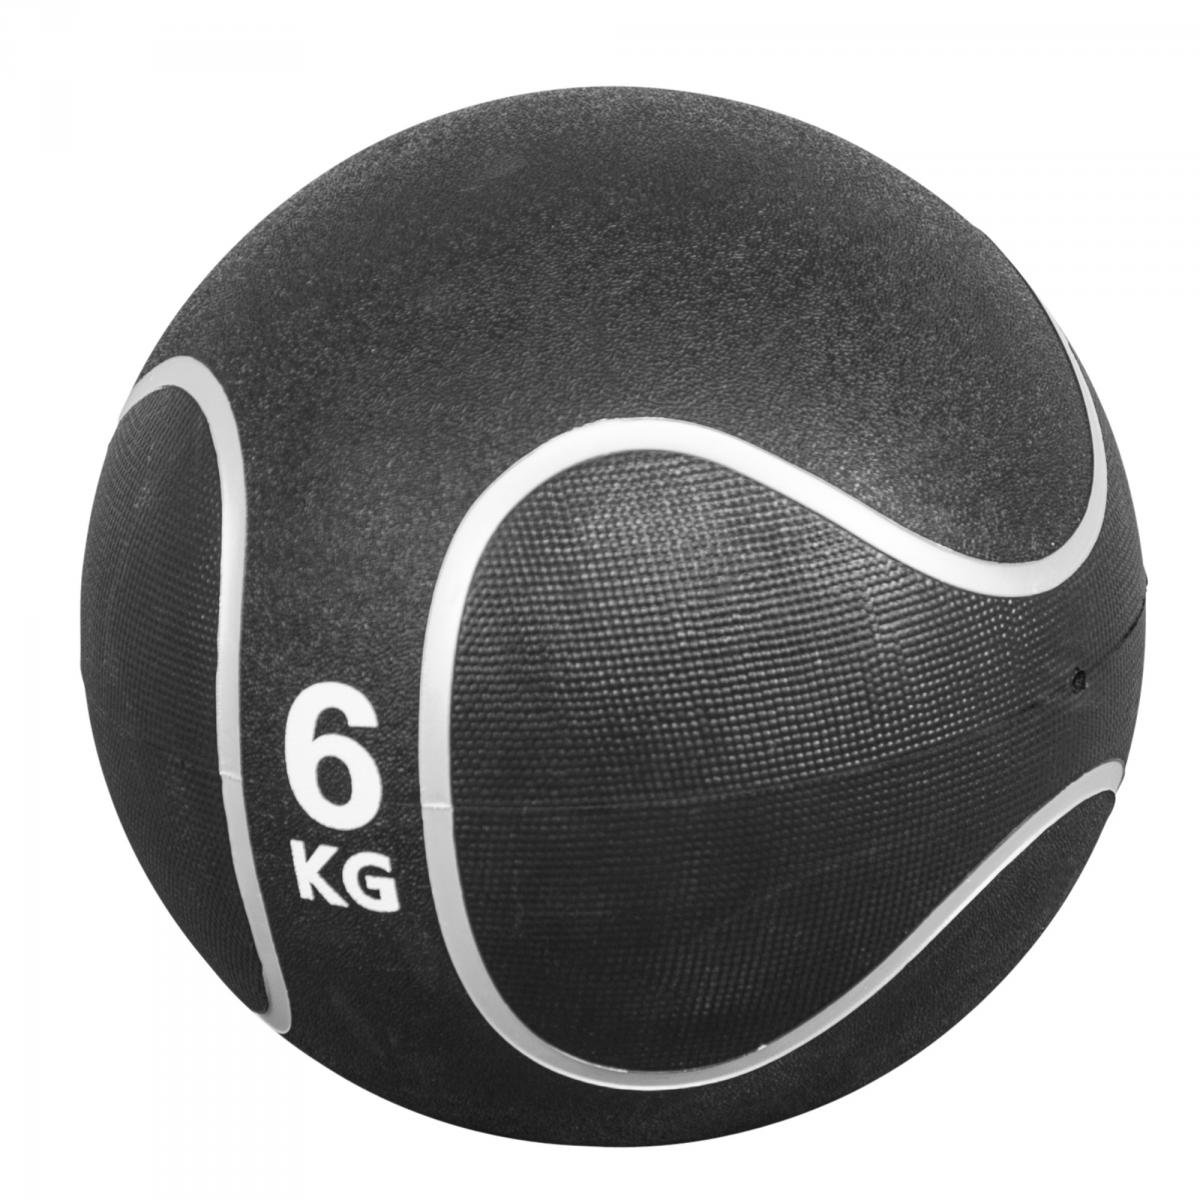 Médecine ball style noir/gris de 6 KG diamètre 28,6cm